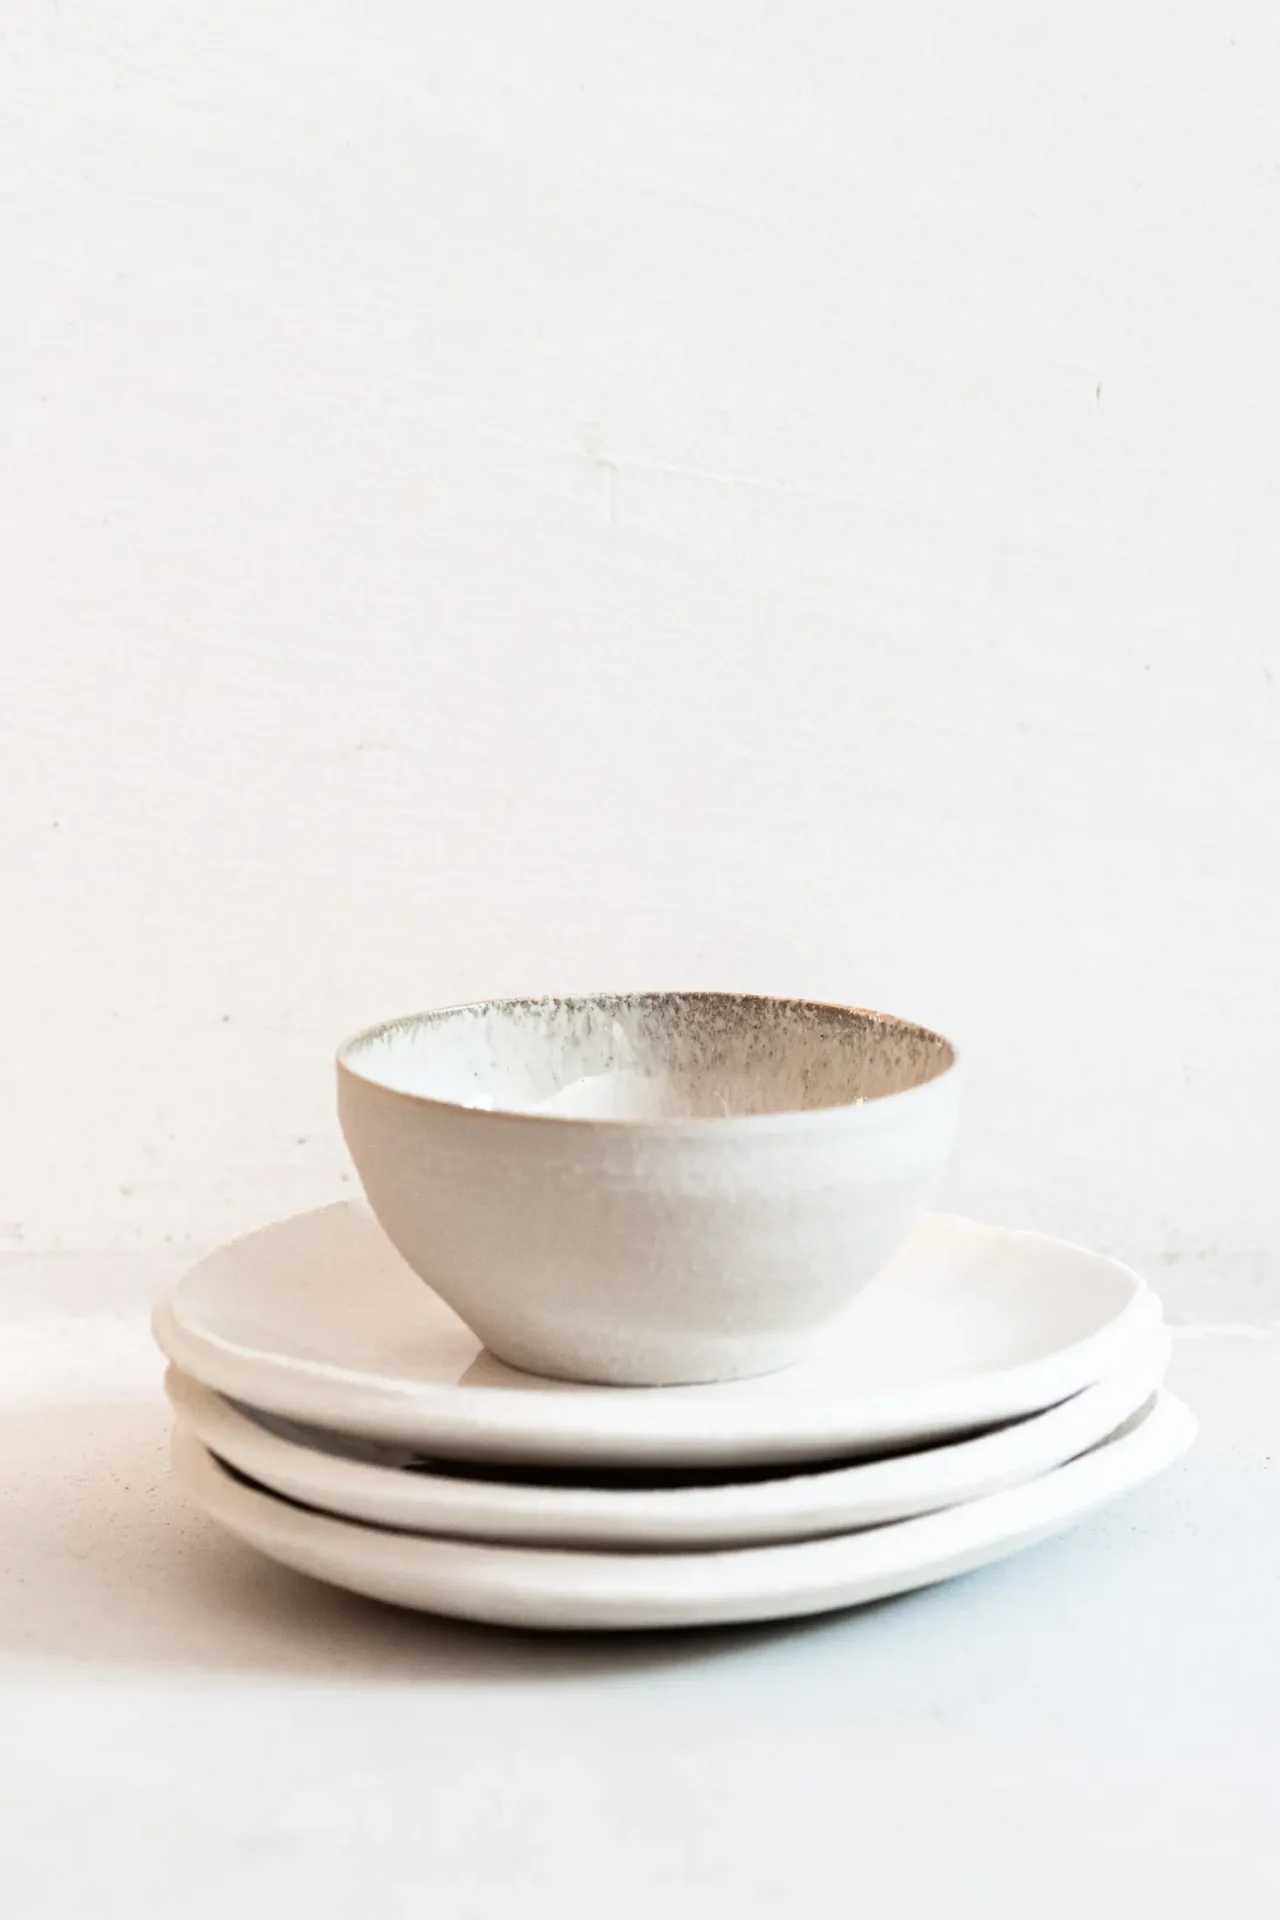 Trois assiettes et un bol épilé en céramique blanc sur fond blanc